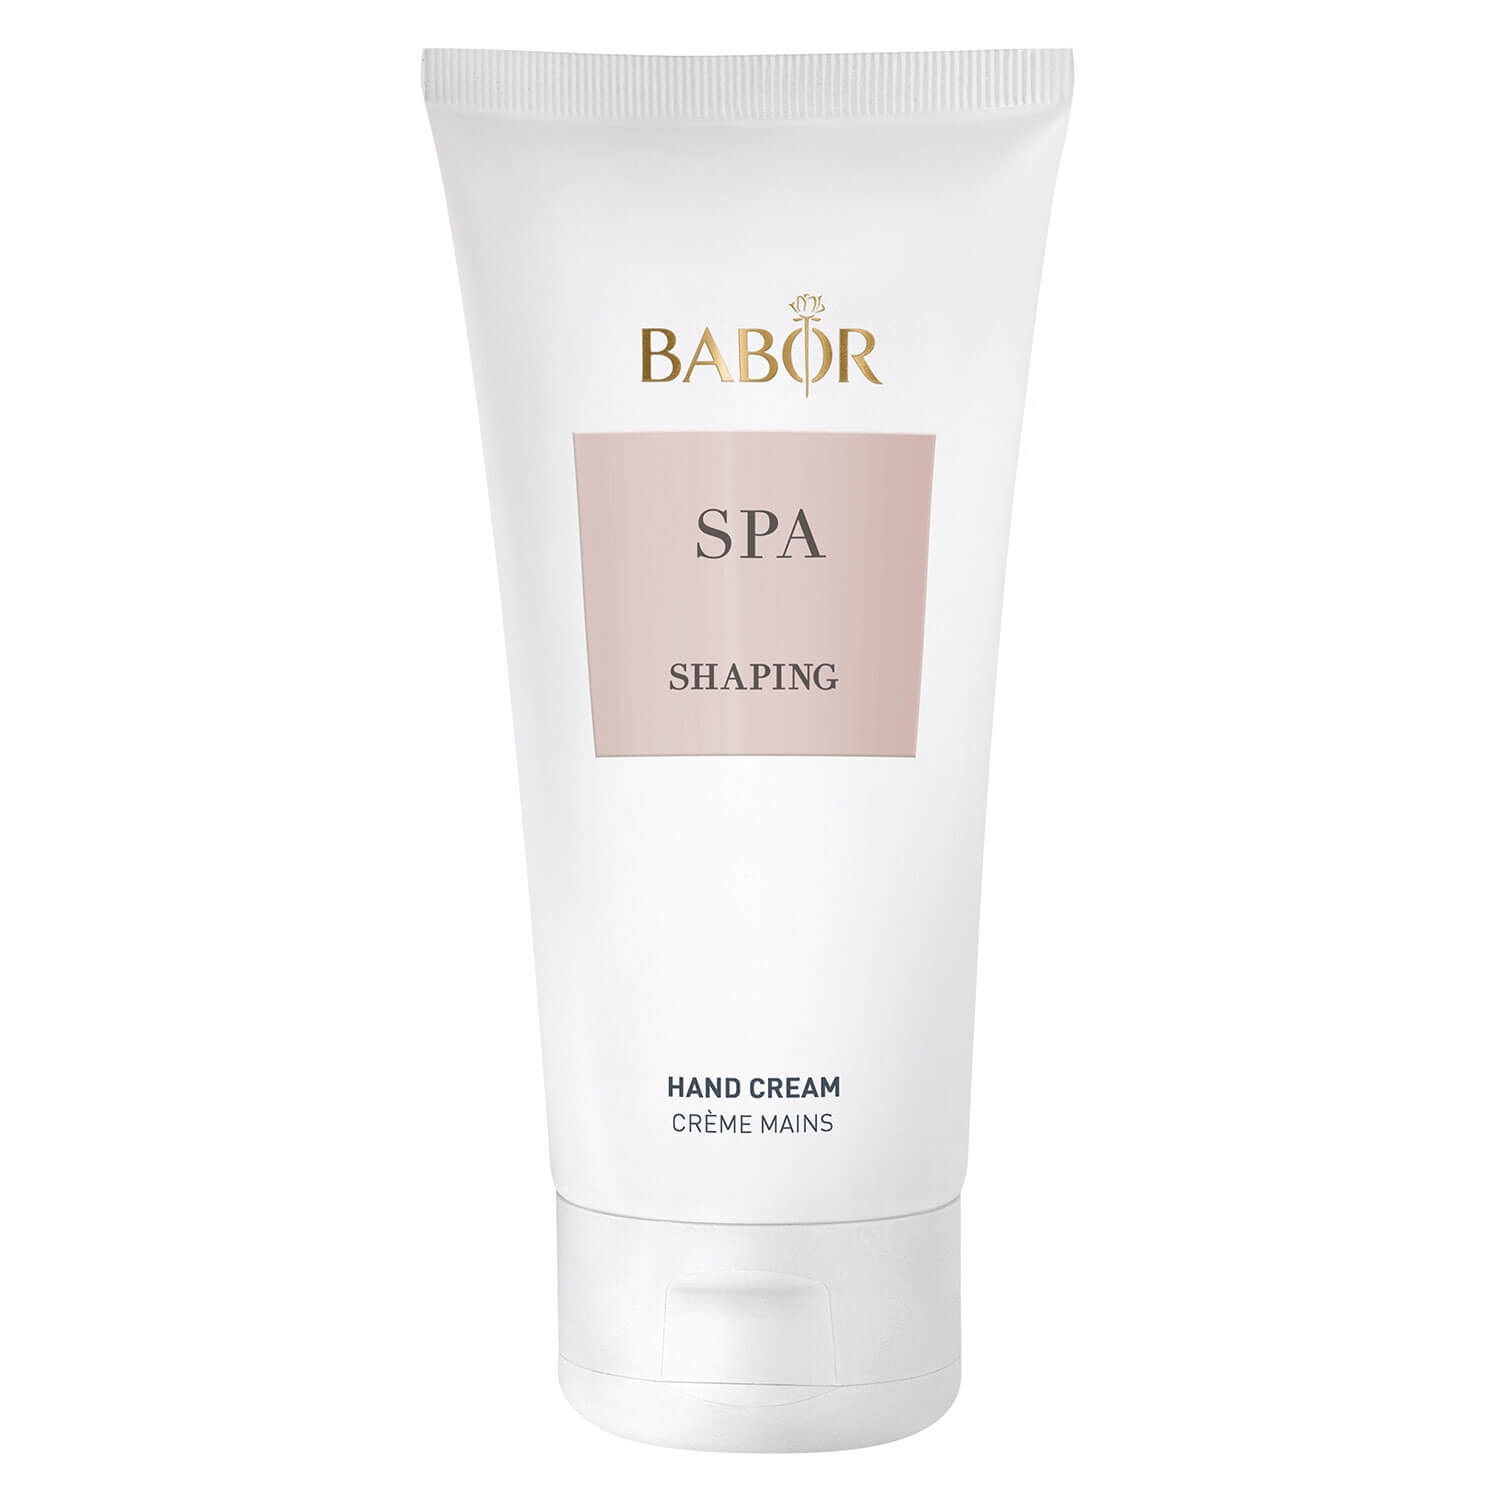 Produktbild von BABOR SPA - Shaping Hand Cream